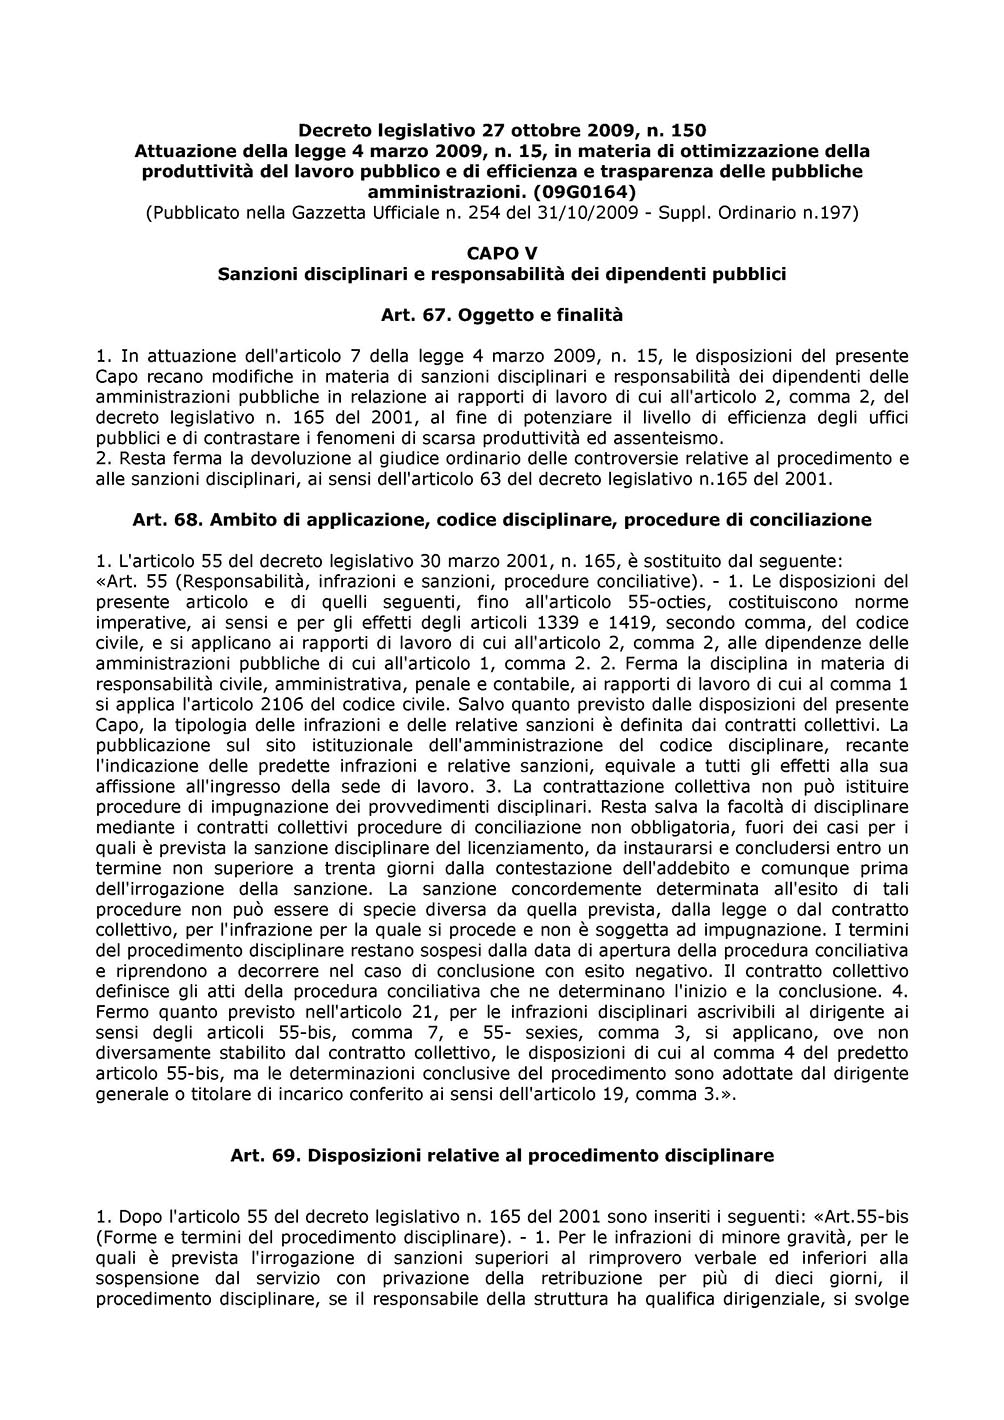 Decreto_legislativo_n.150-2009_Pagina_1